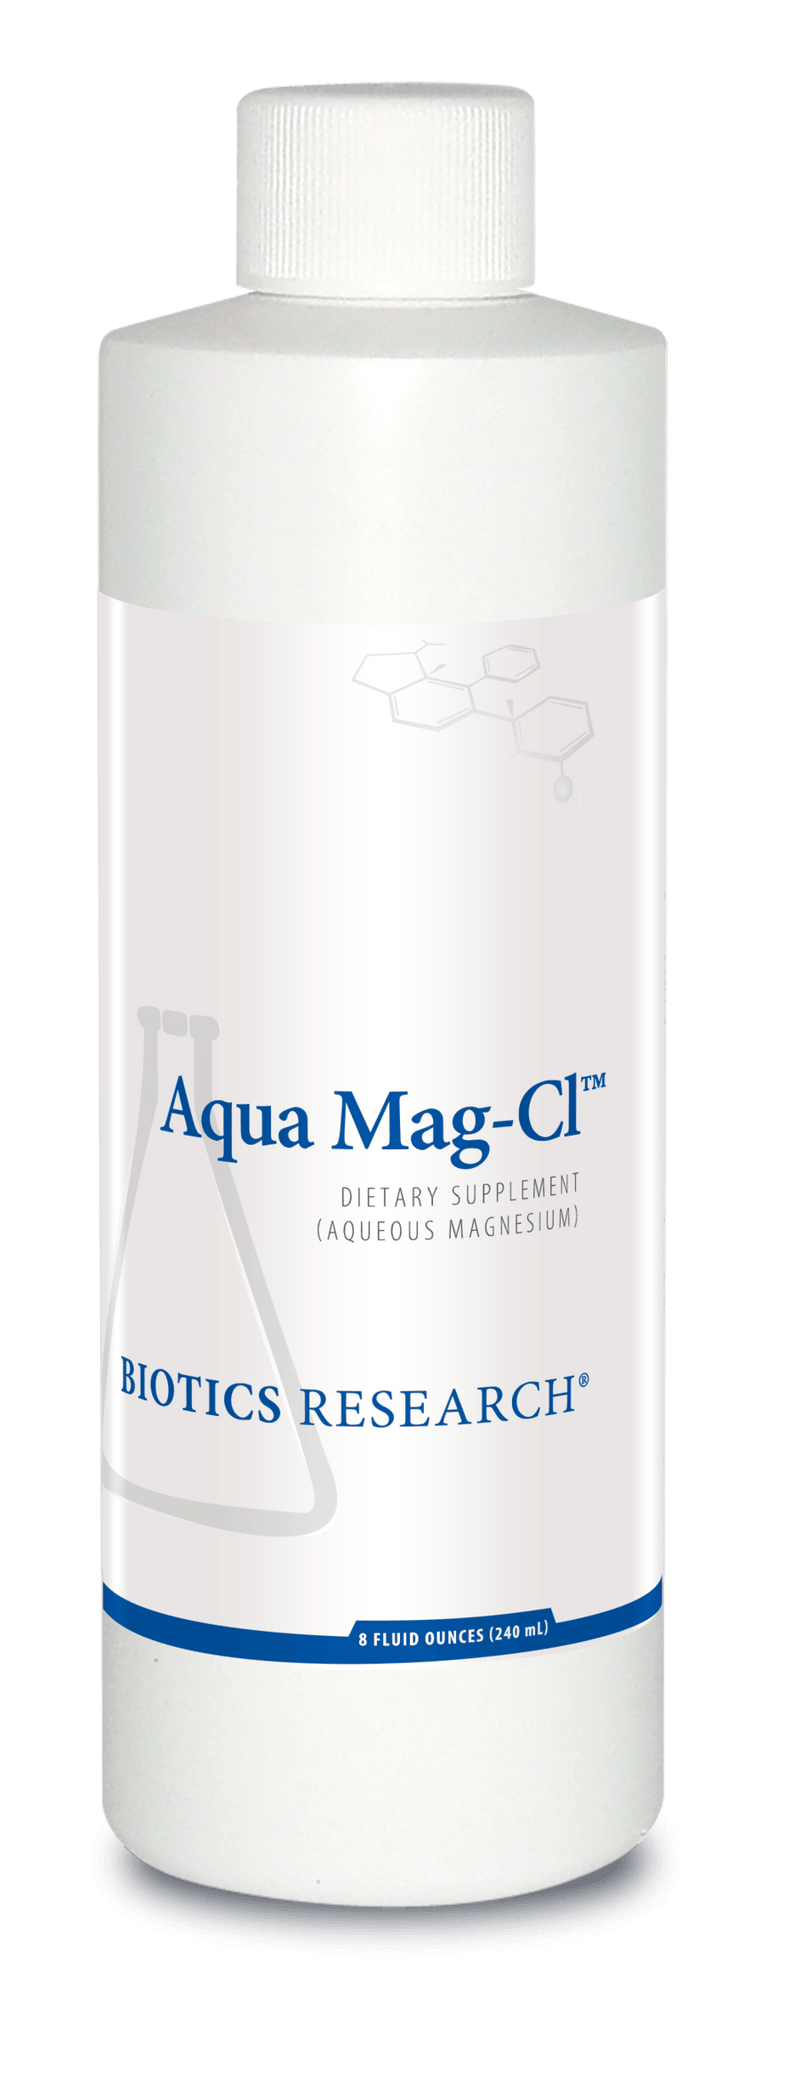 Aqua Mag-Cl 8 fl.oz Biotics Research - VitaHeals.com